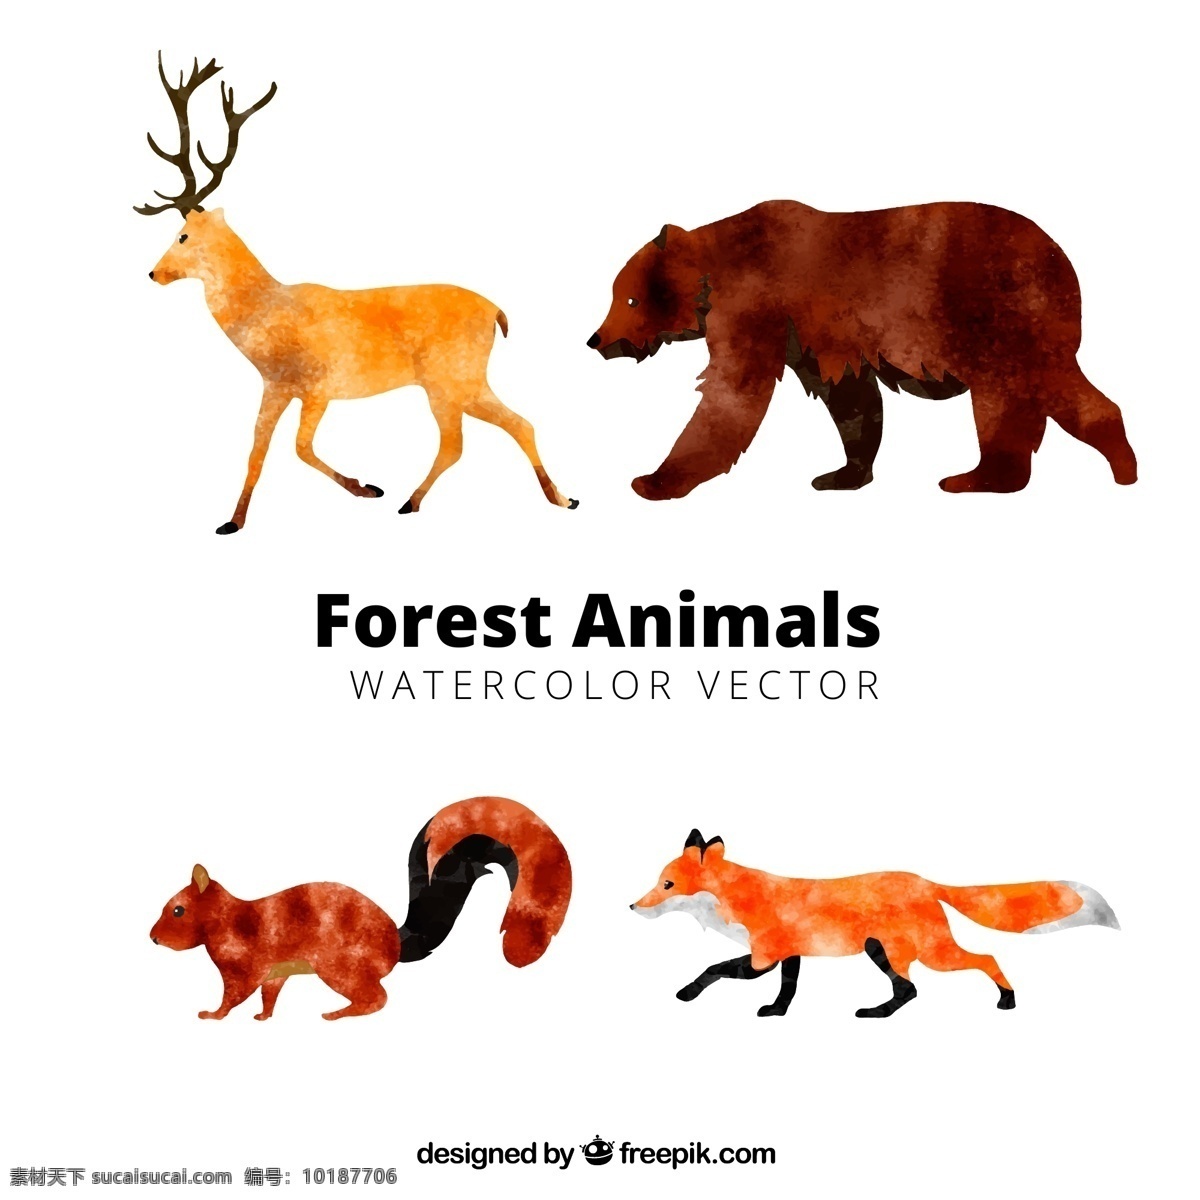 款 水彩 绘 动感 森林 动物 矢量 可爱 手绘 卡通 水彩绘 麋鹿 棕熊 松鼠 狐狸